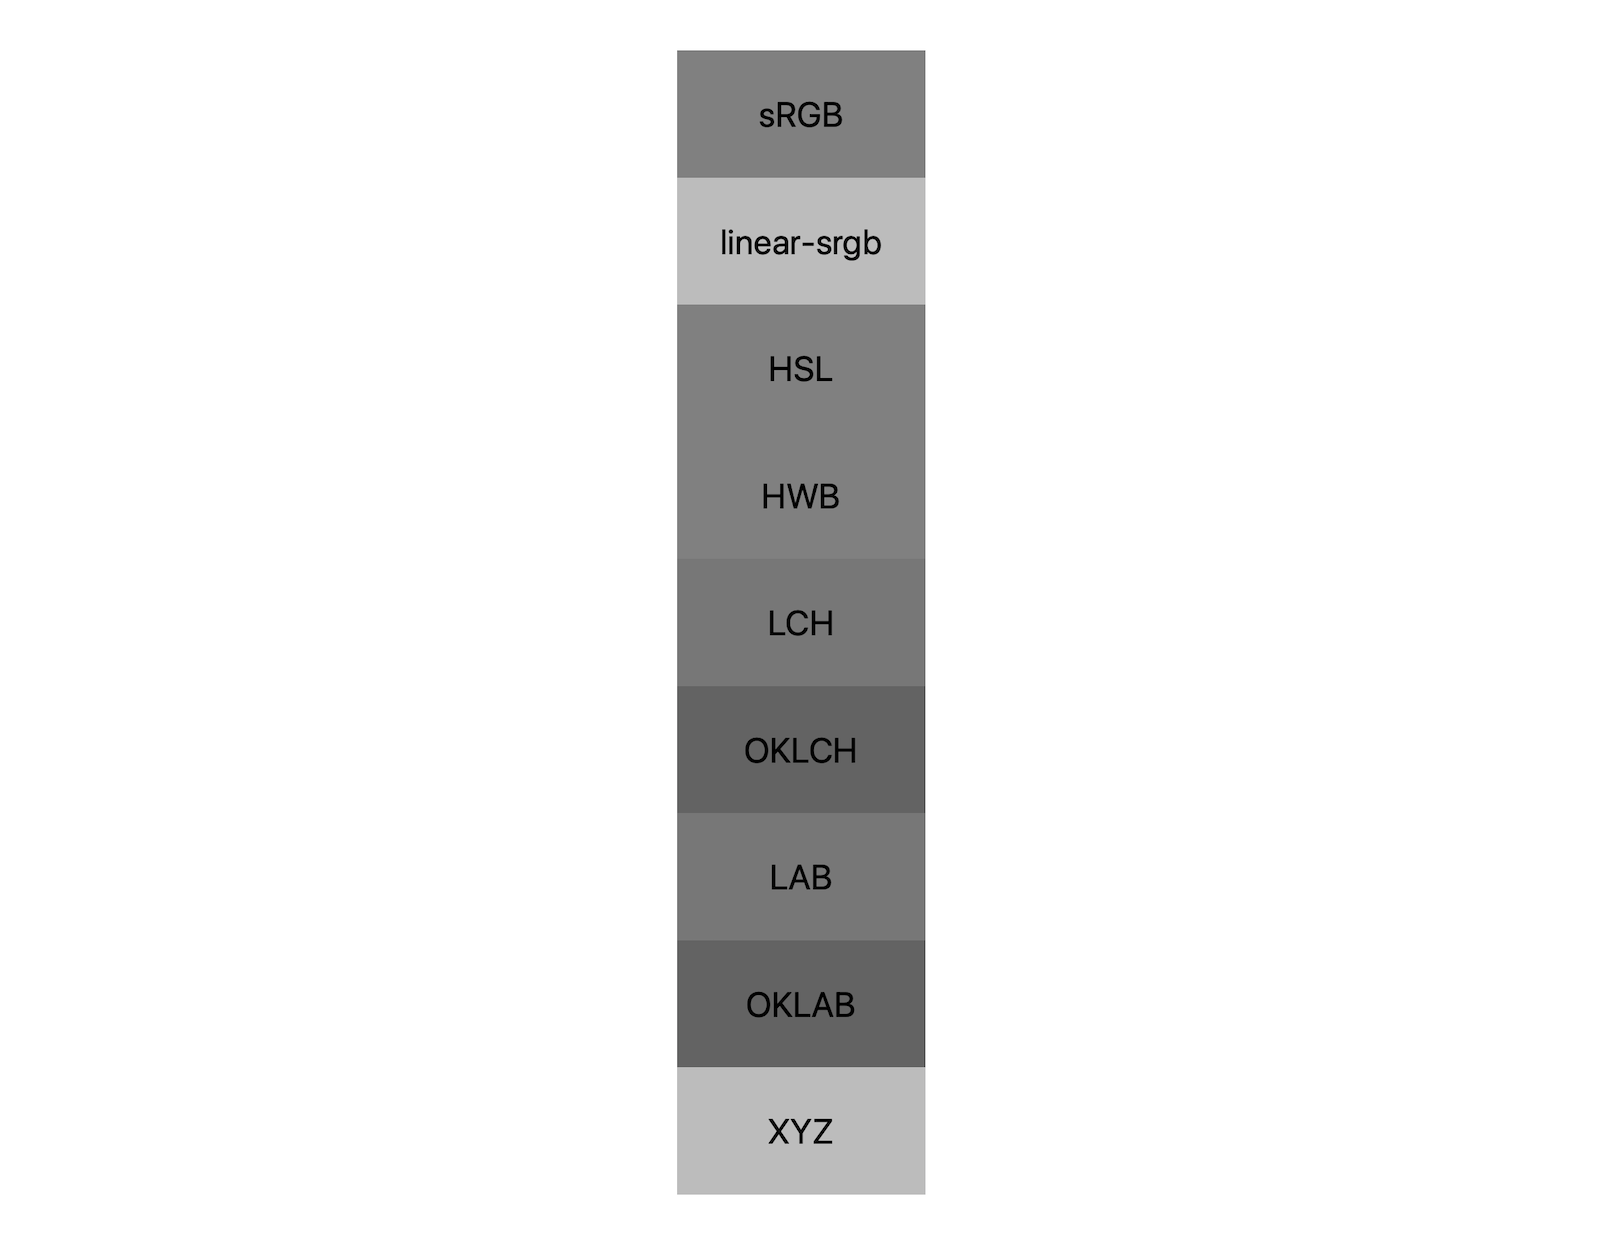 白黒を混ぜた 7 つの色空間（sRGB、linear-sRGB、lch、oklch、lab、oklab、xyz）はそれぞれ、およそ 5 つの異なるシェードが表示されており、各色空間がグレーに混ざり合っている様子が見えています。